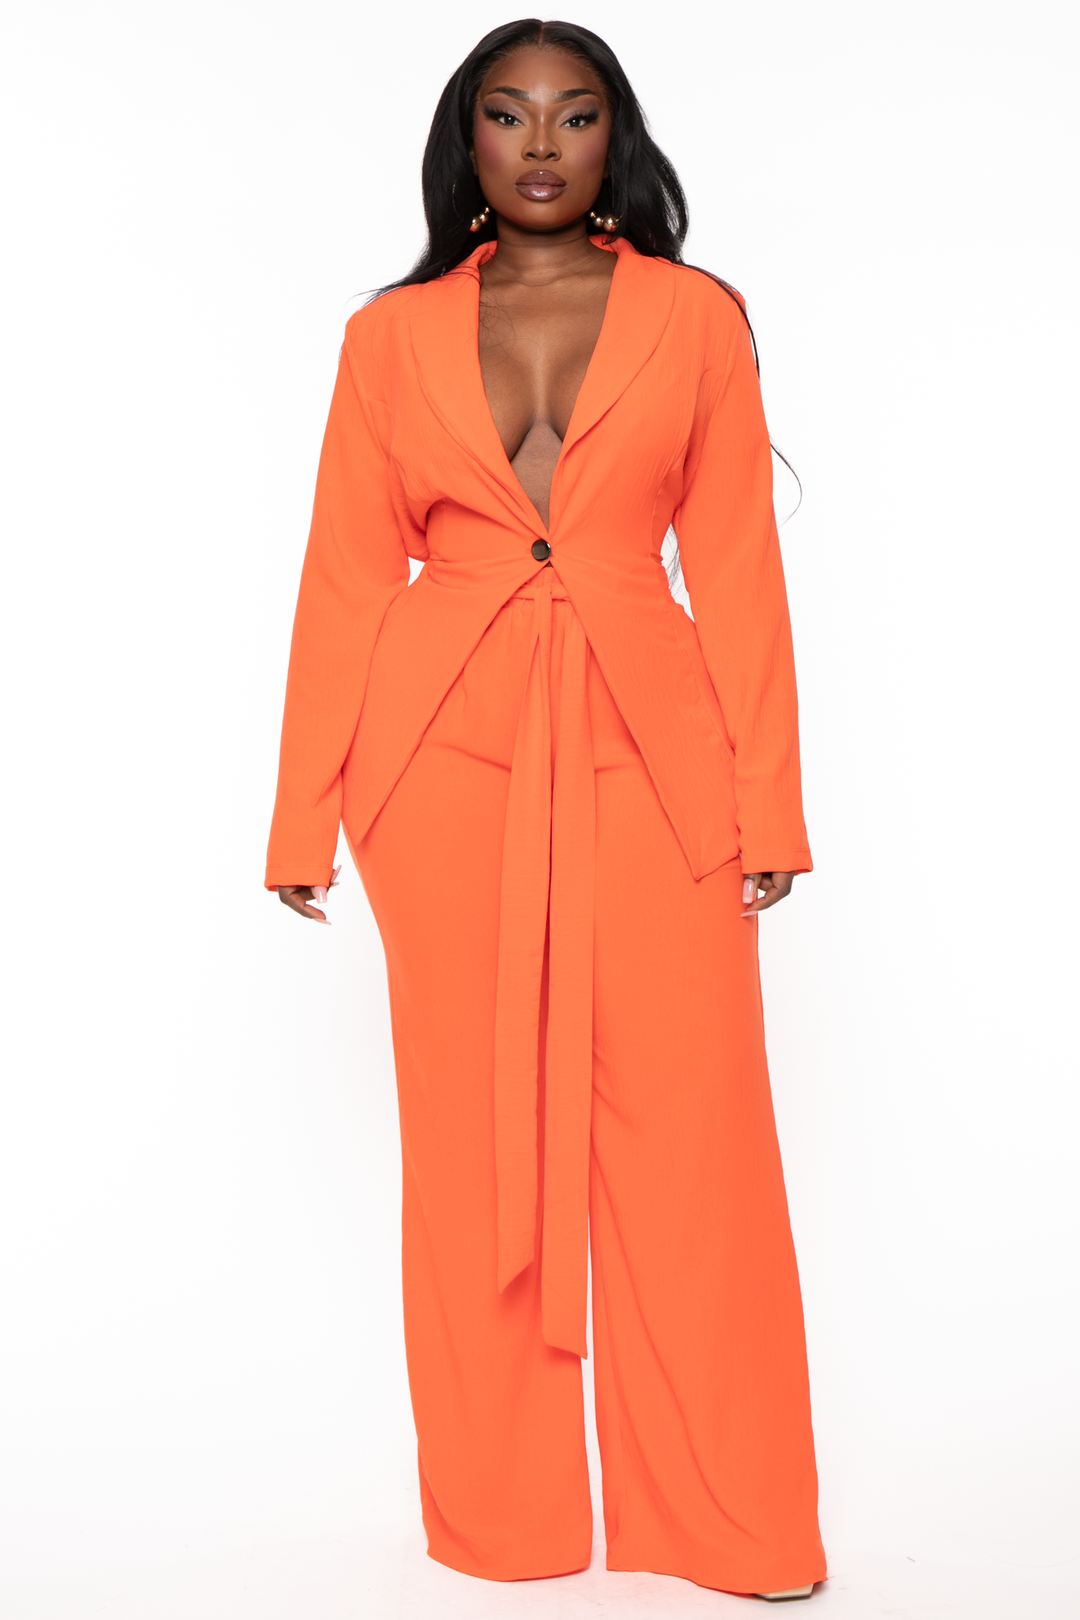 Plus Size HBIC Pant Suit - Orange – Curvy Sense